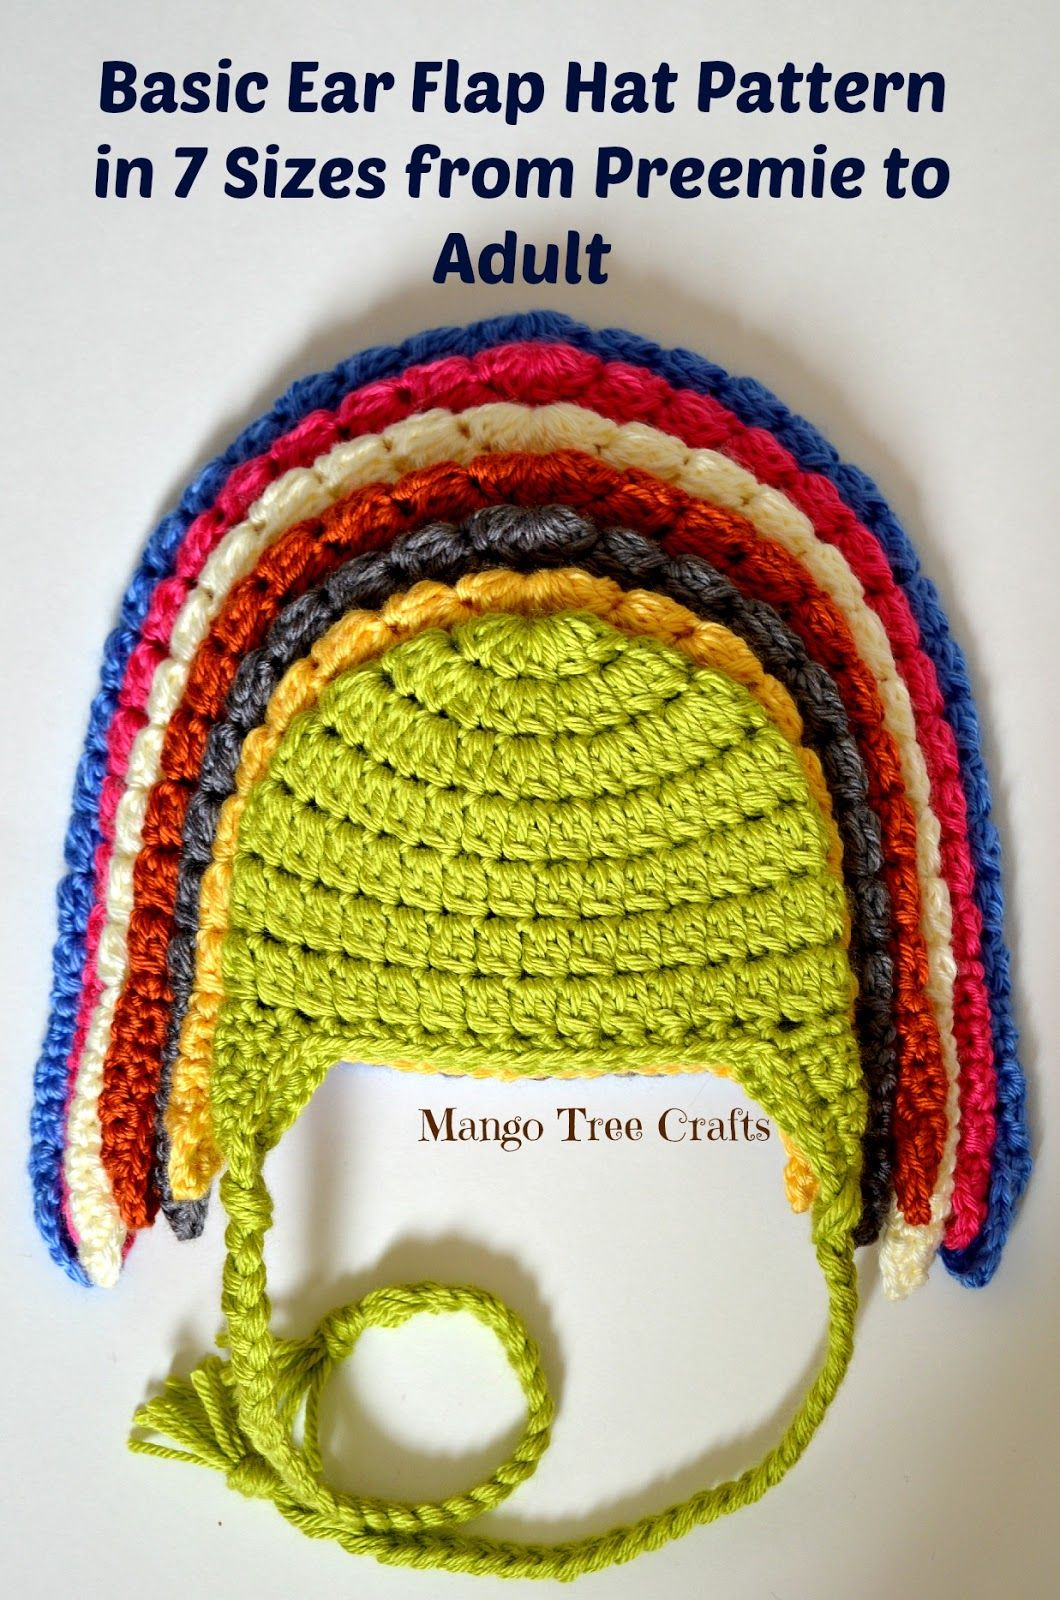 Single Crochet Earflap Hat Pattern Basic Crochet Ear Flap Hat Pattern In 7 Sizes Crochet Hats